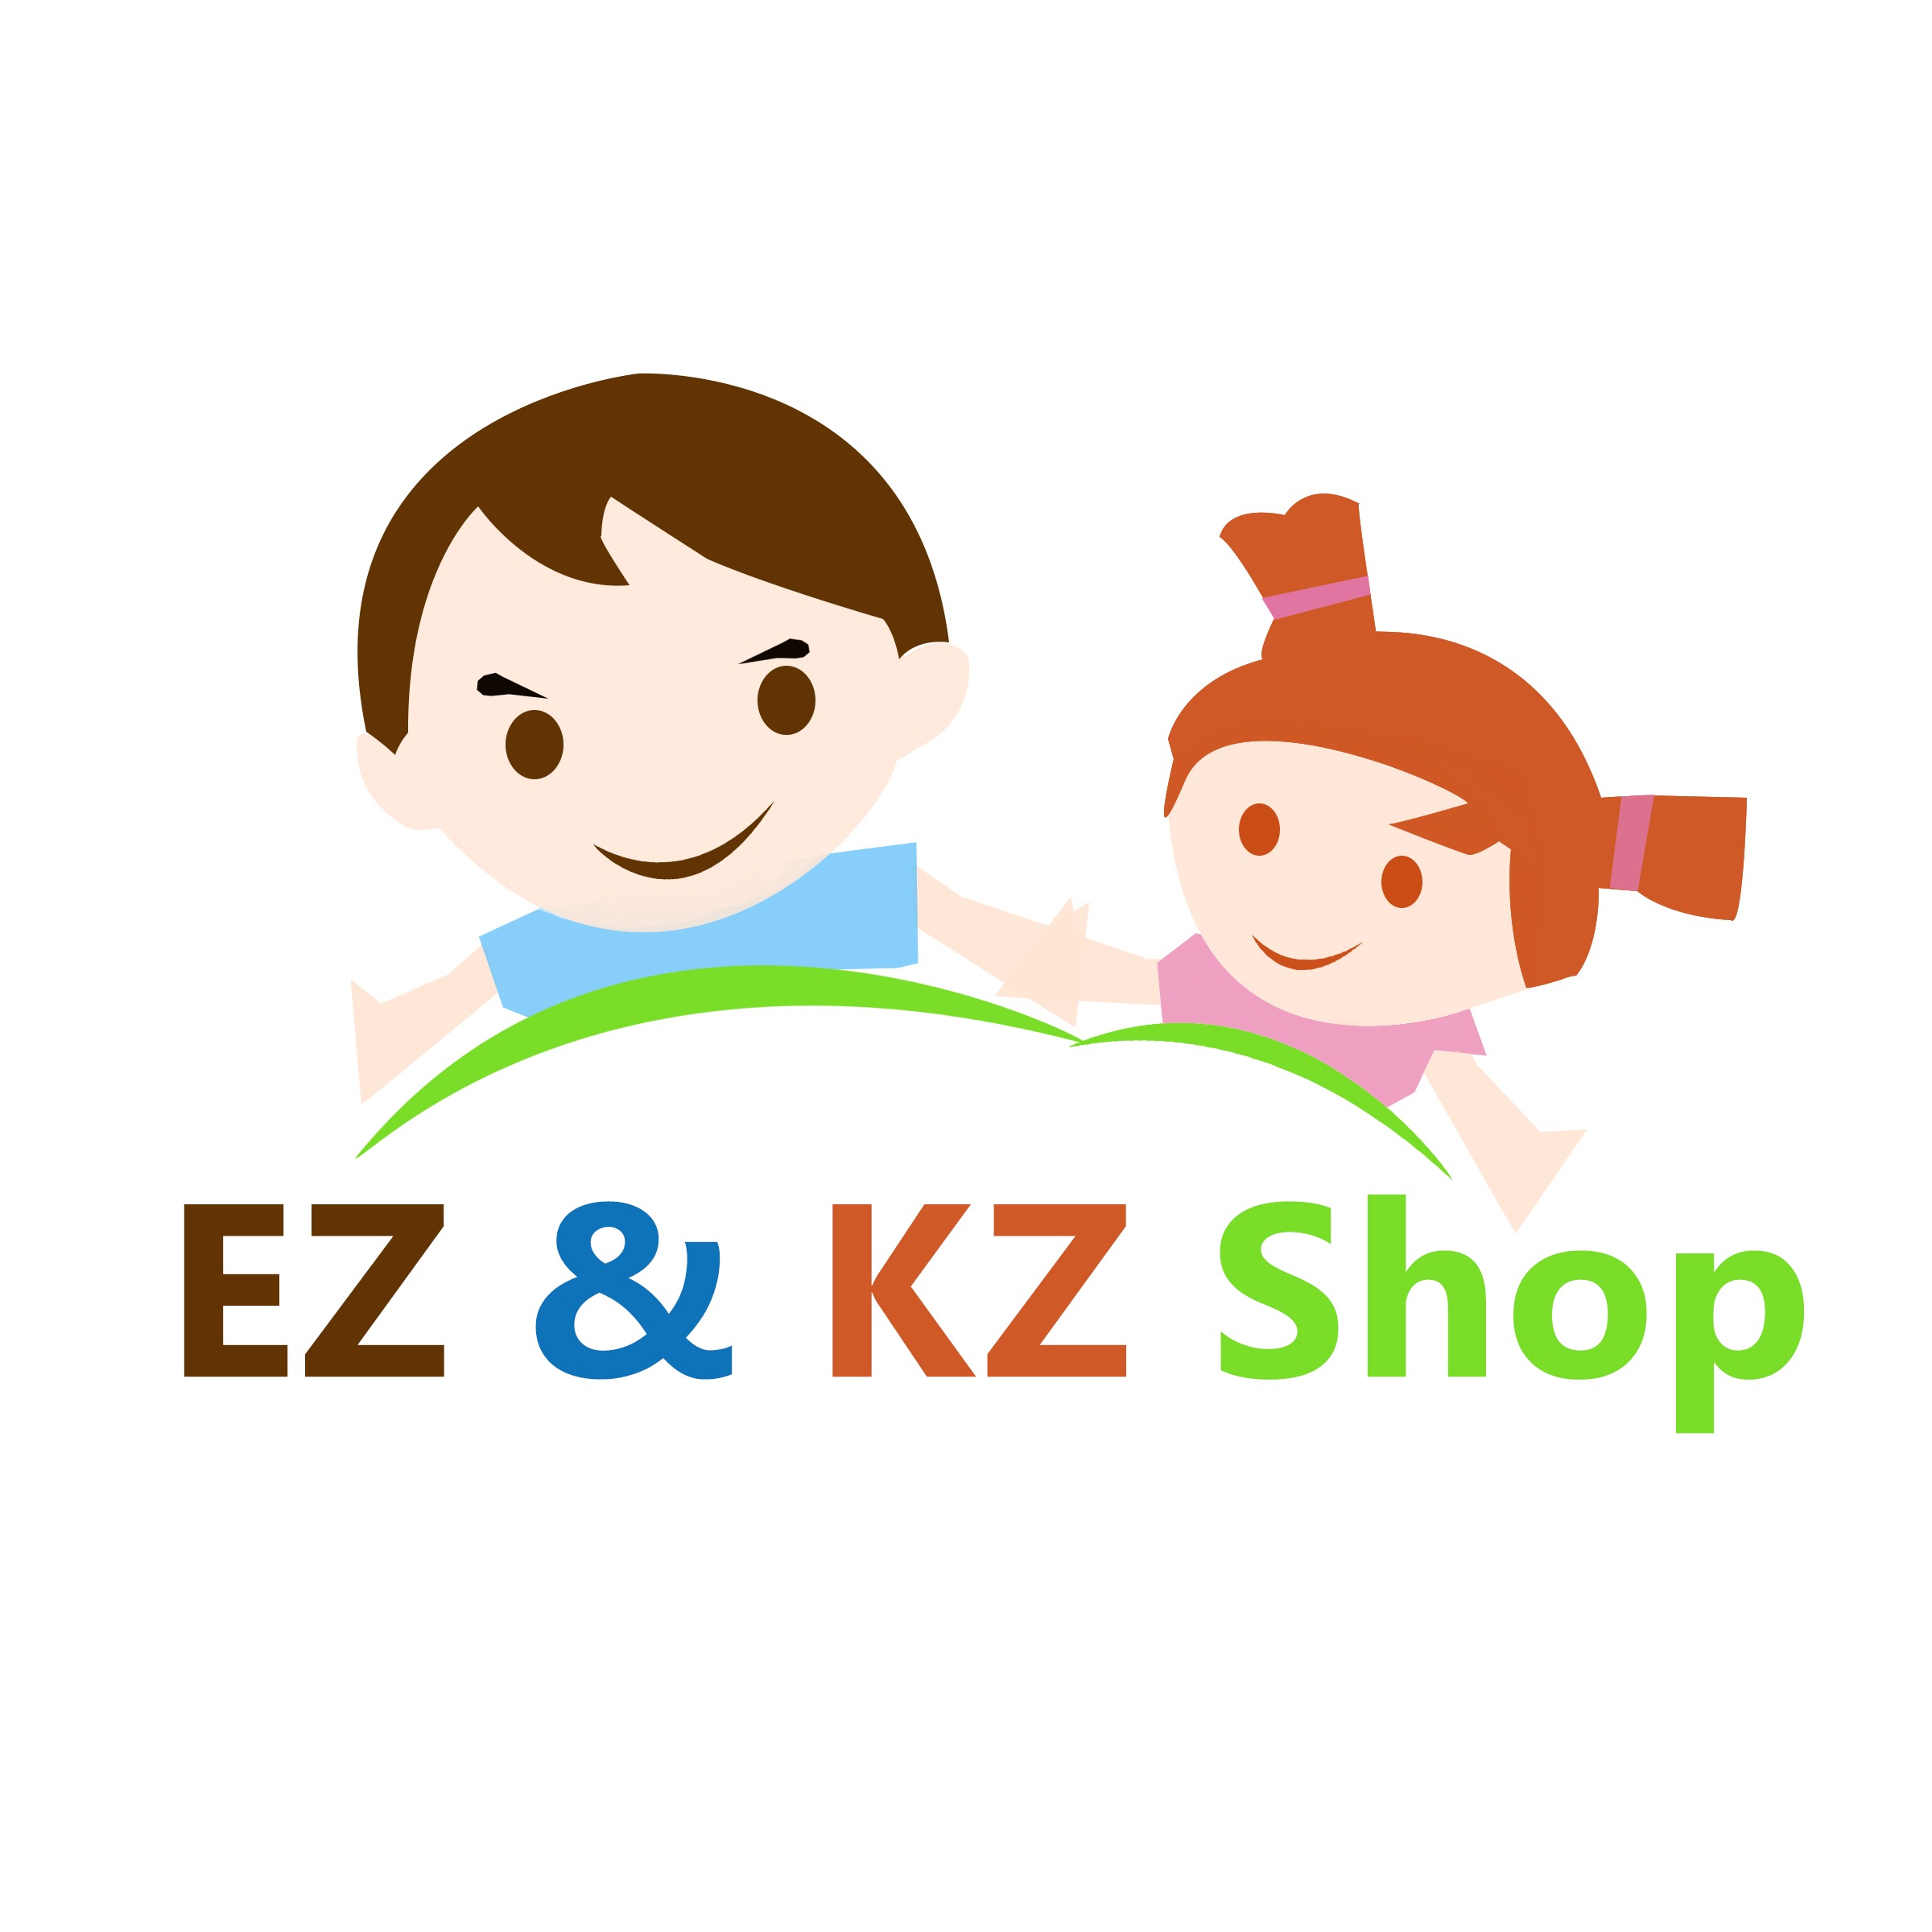 Shop online with EZ & KZ Shop now! Visit EZ & KZ Shop on Lazada.